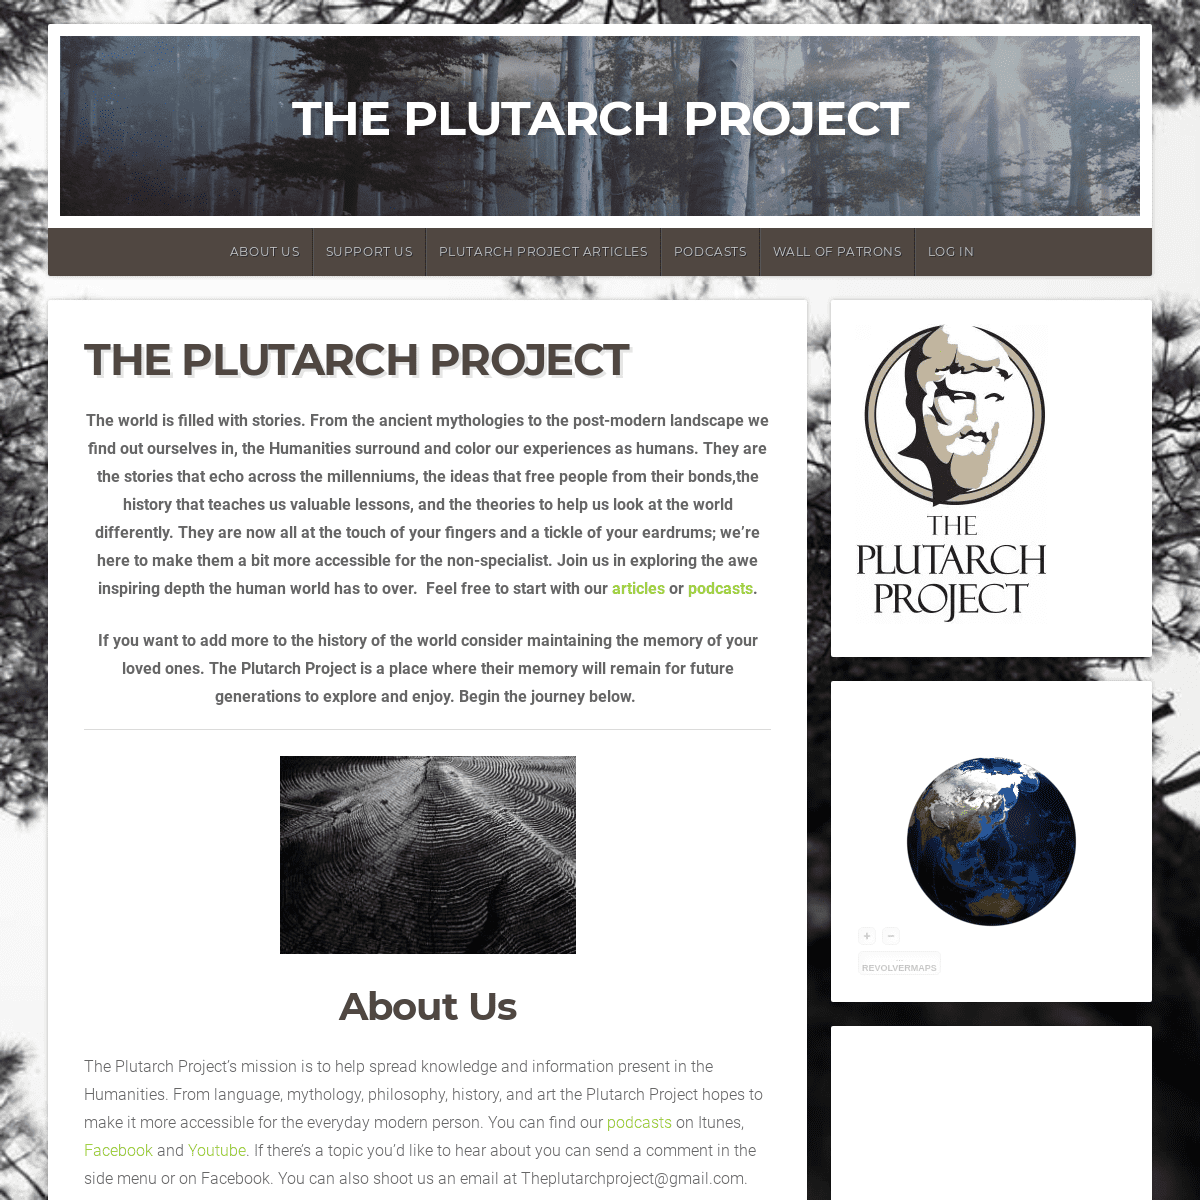 The Plutarch Project - The Plutarch Project